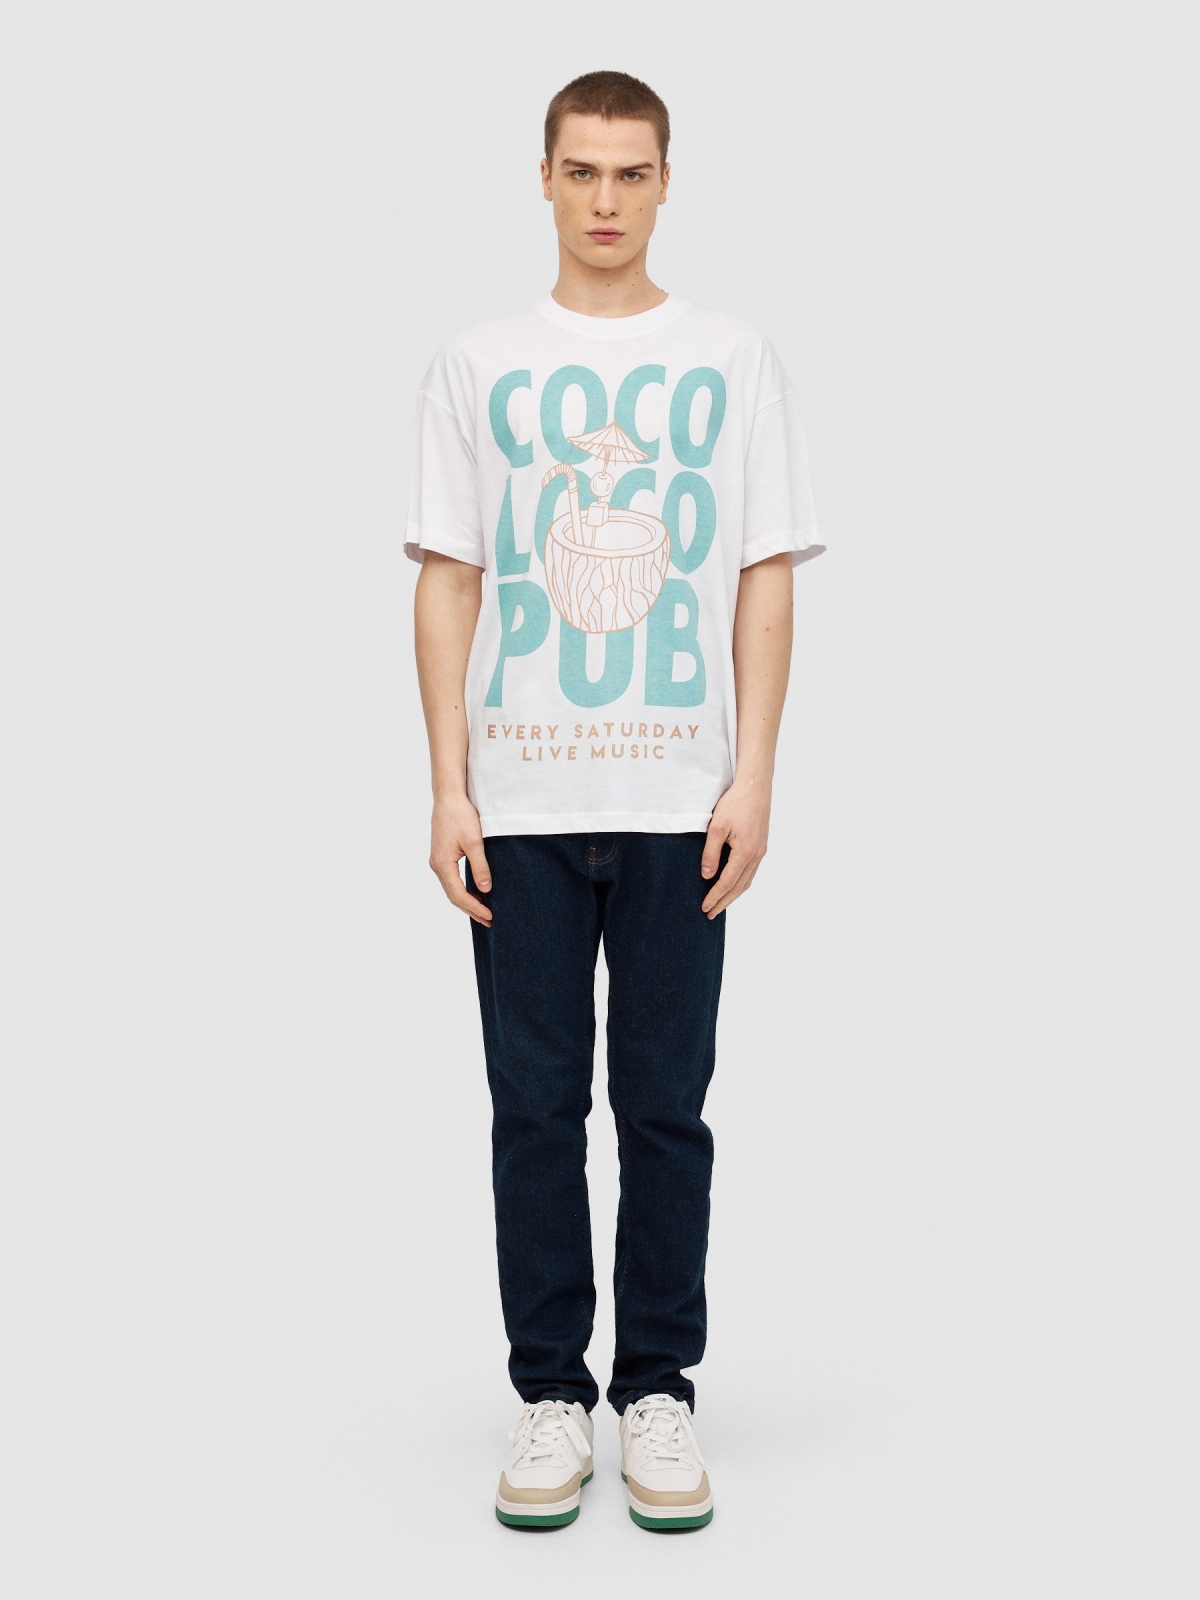 T-shirt Coco Loco branco vista geral frontal